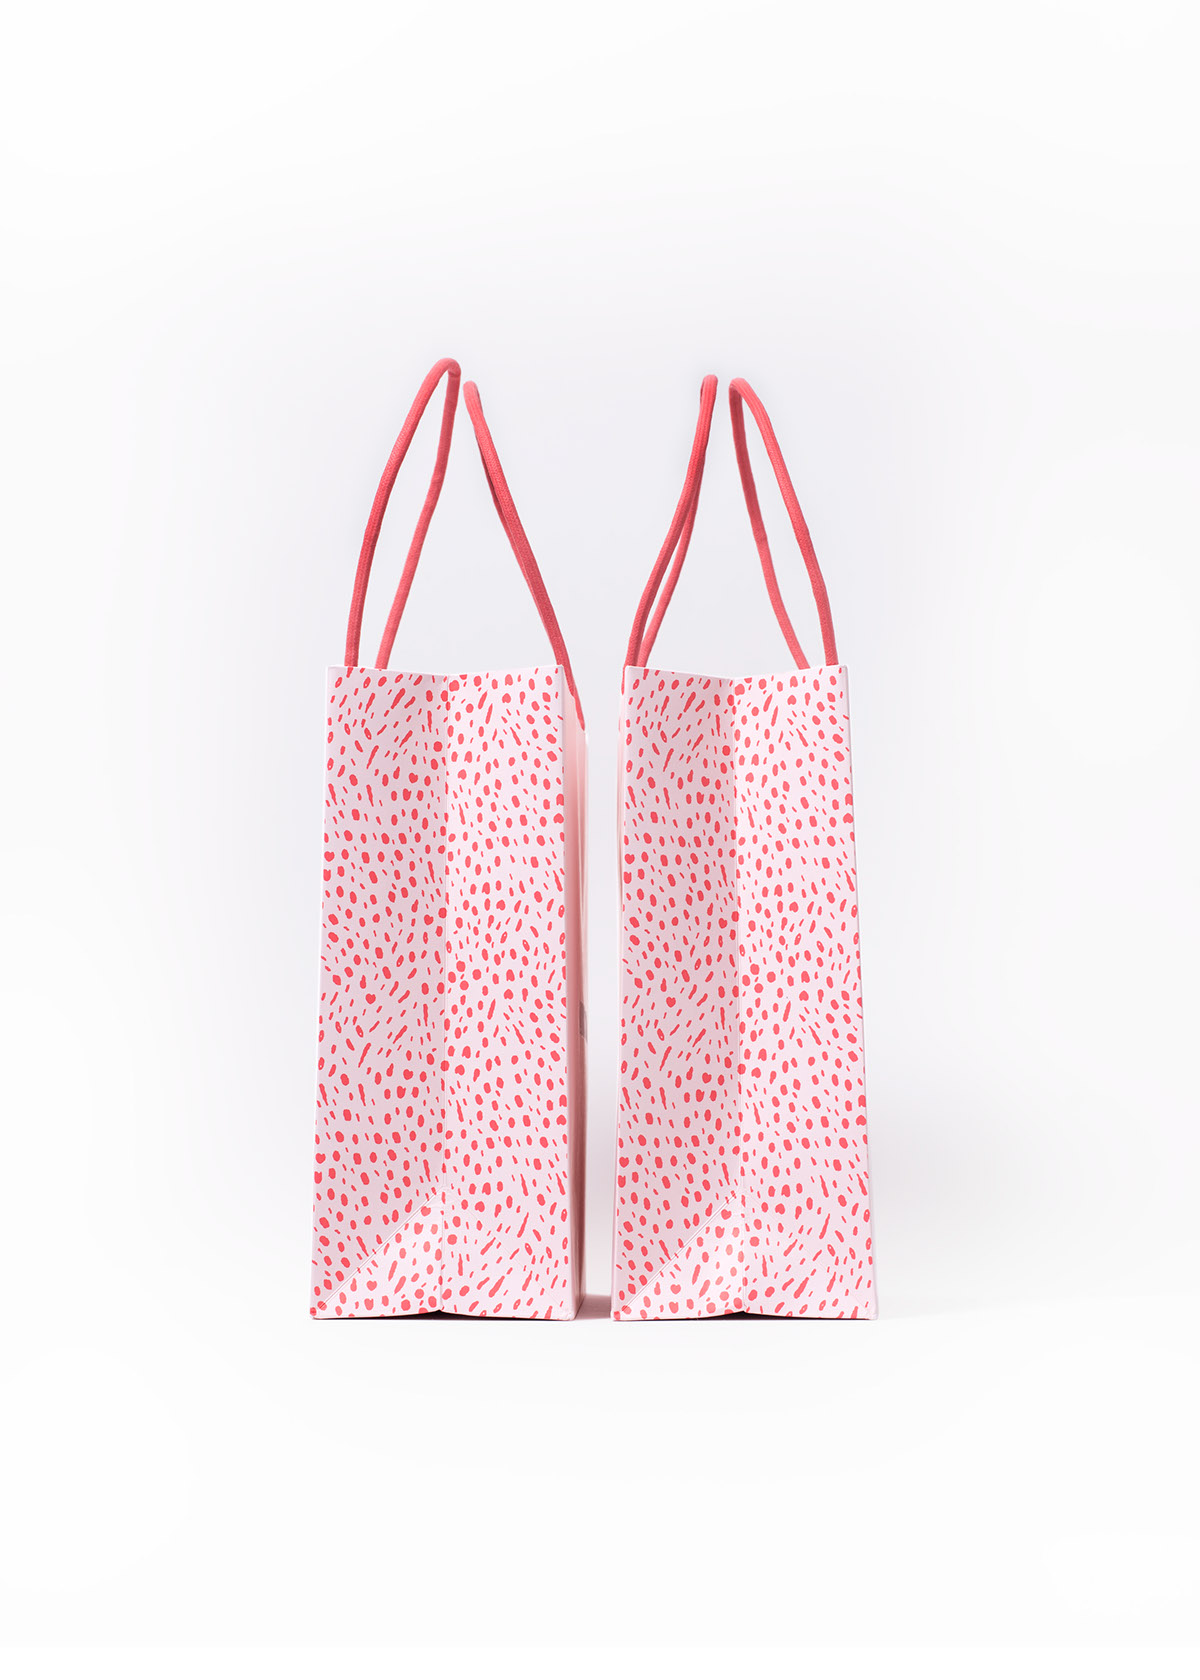 Retail Logo Design package design  hang tag shoppingbag pattern